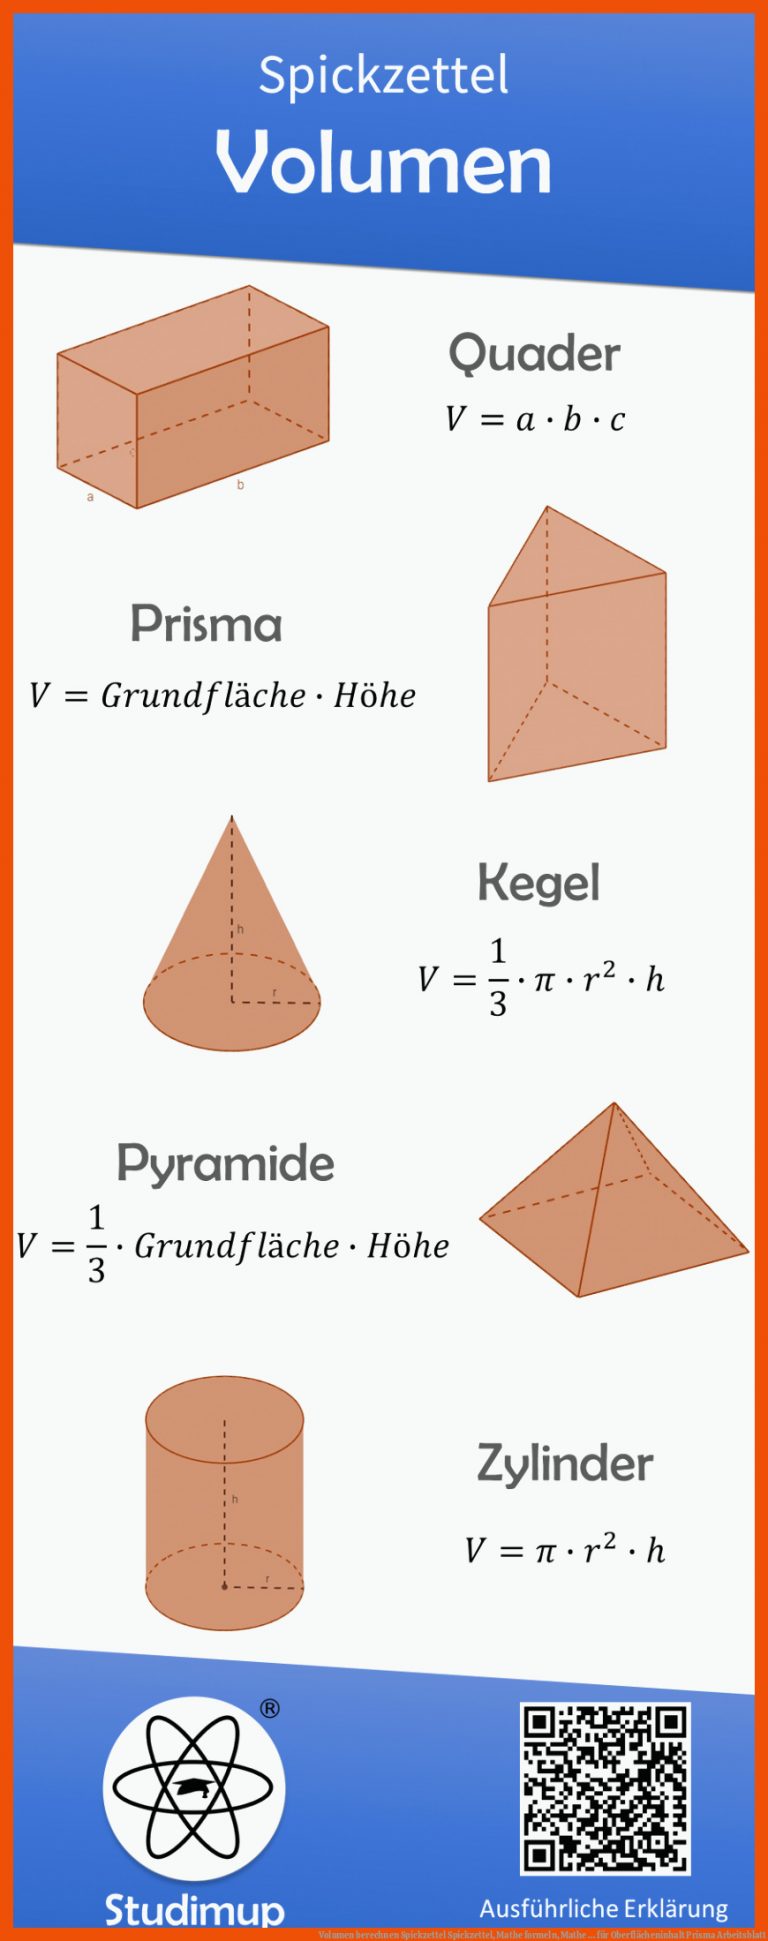 Volumen berechnen Spickzettel | Spickzettel, Mathe formeln, Mathe ... für oberflächeninhalt prisma arbeitsblatt